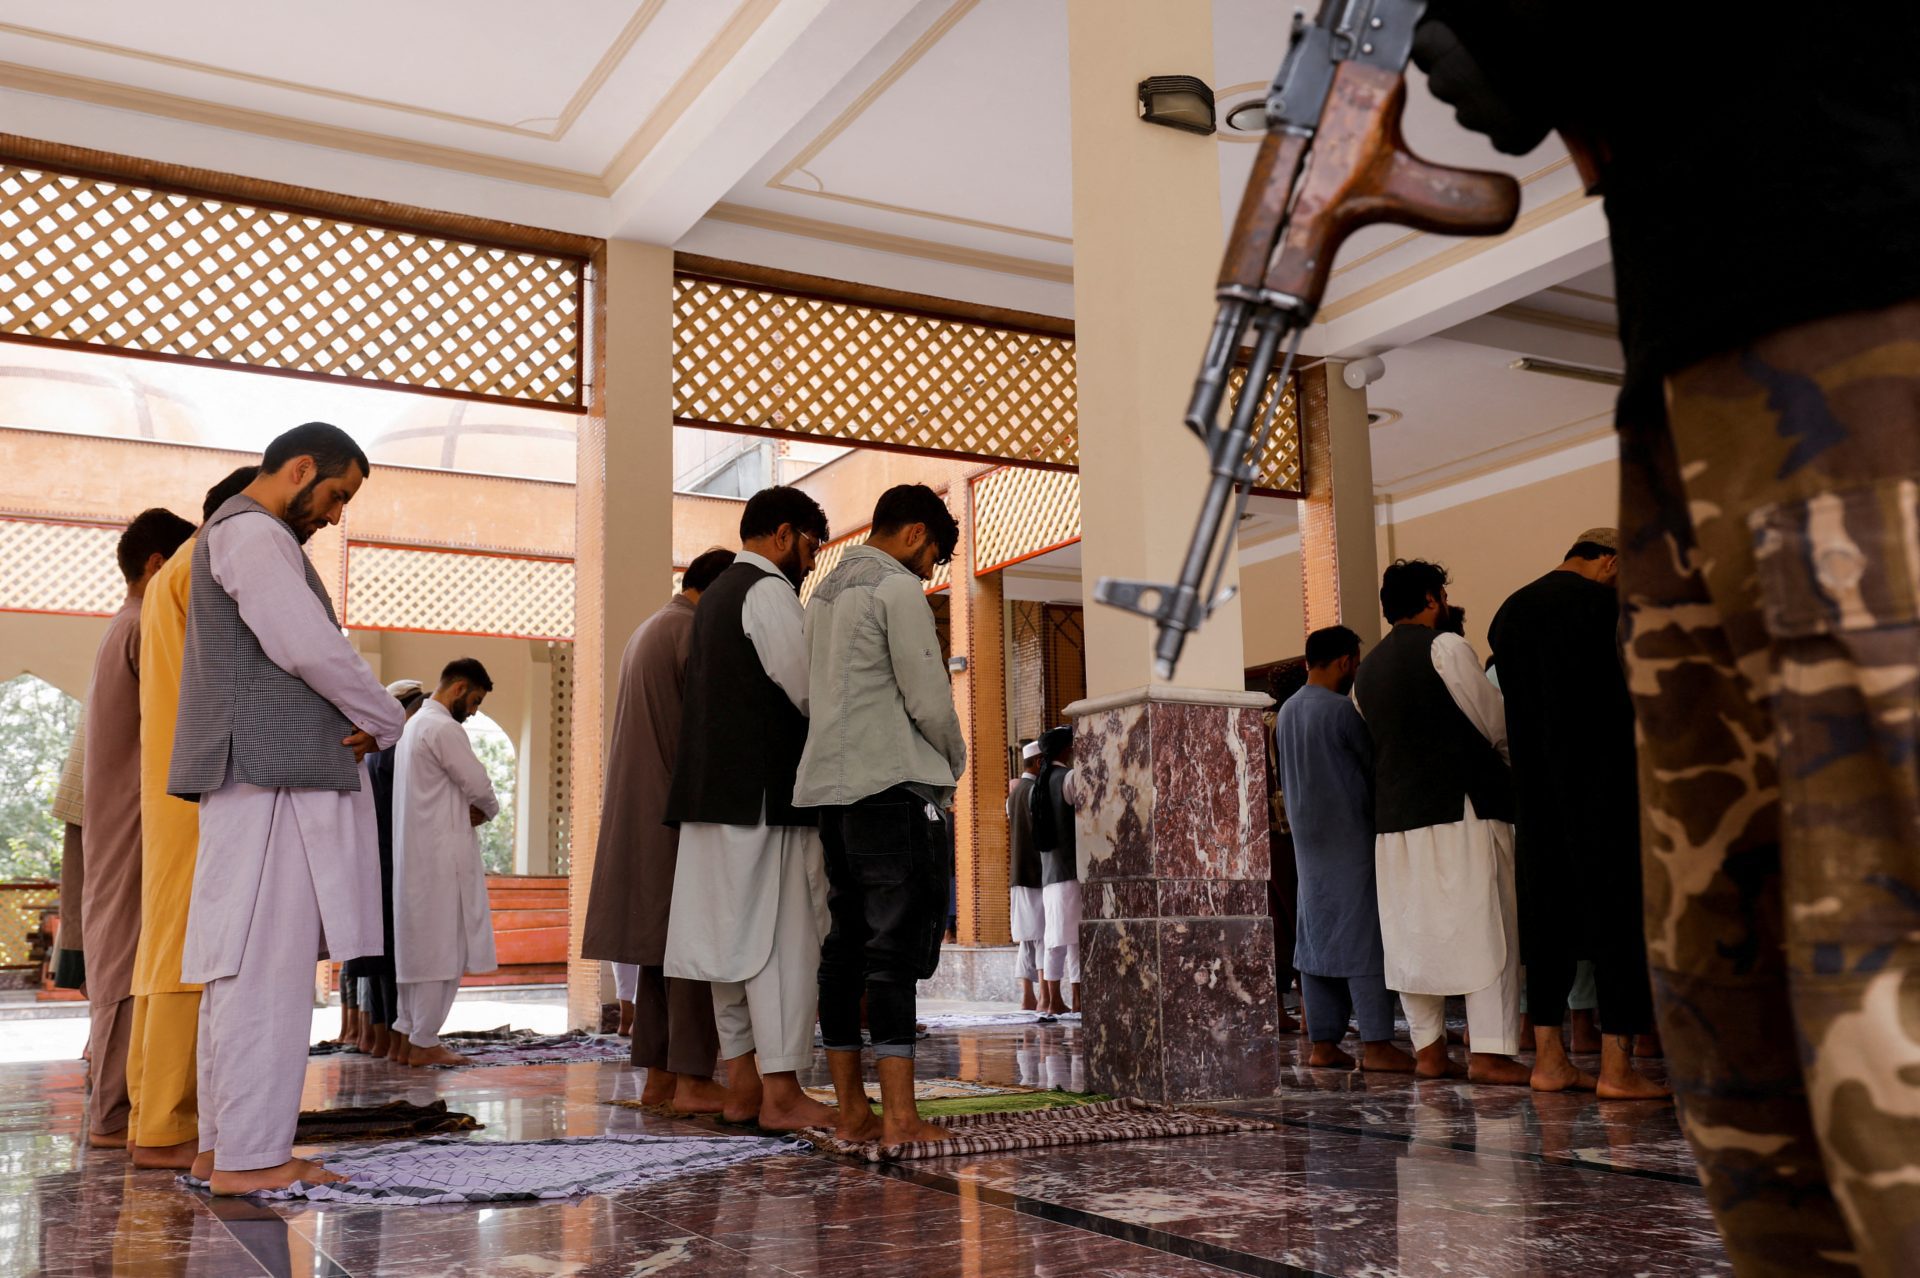 Fusillade dans une mosquée à Hérat, Afghanistan - 6 morts au moins